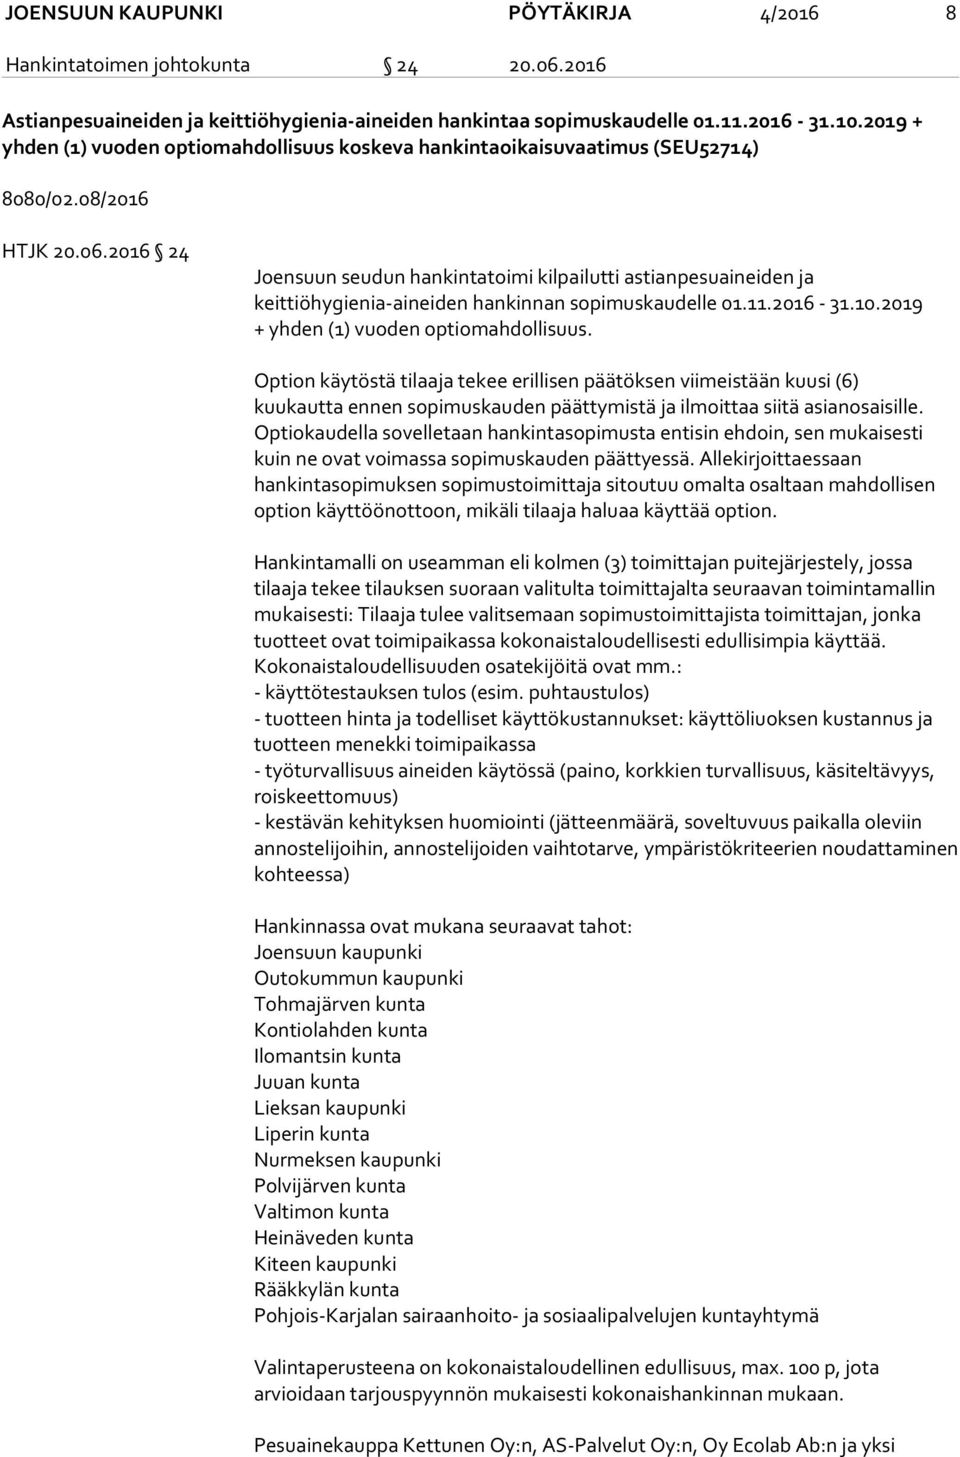 2016 24 Joensuun seudun hankintatoimi kilpailutti astianpesuaineiden ja keittiöhygienia-aineiden hankinnan sopimuskaudelle 01.11.2016-31.10.2019 + yhden (1) vuoden optiomahdollisuus.